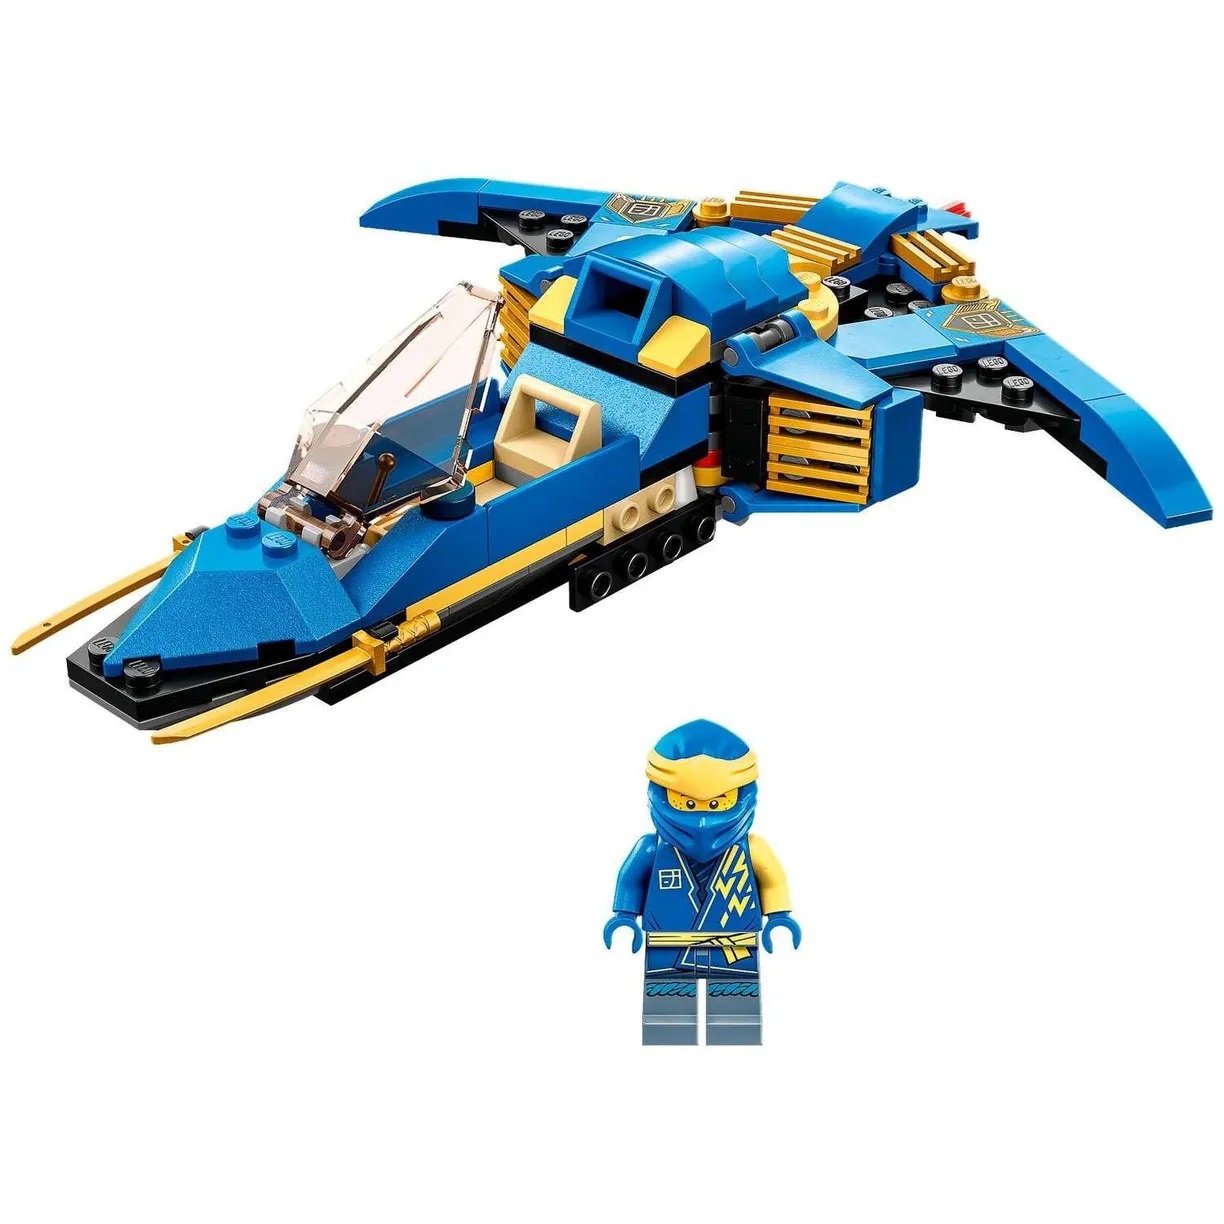 Lego Ninjago 71784 Грозовой самолёт Джея